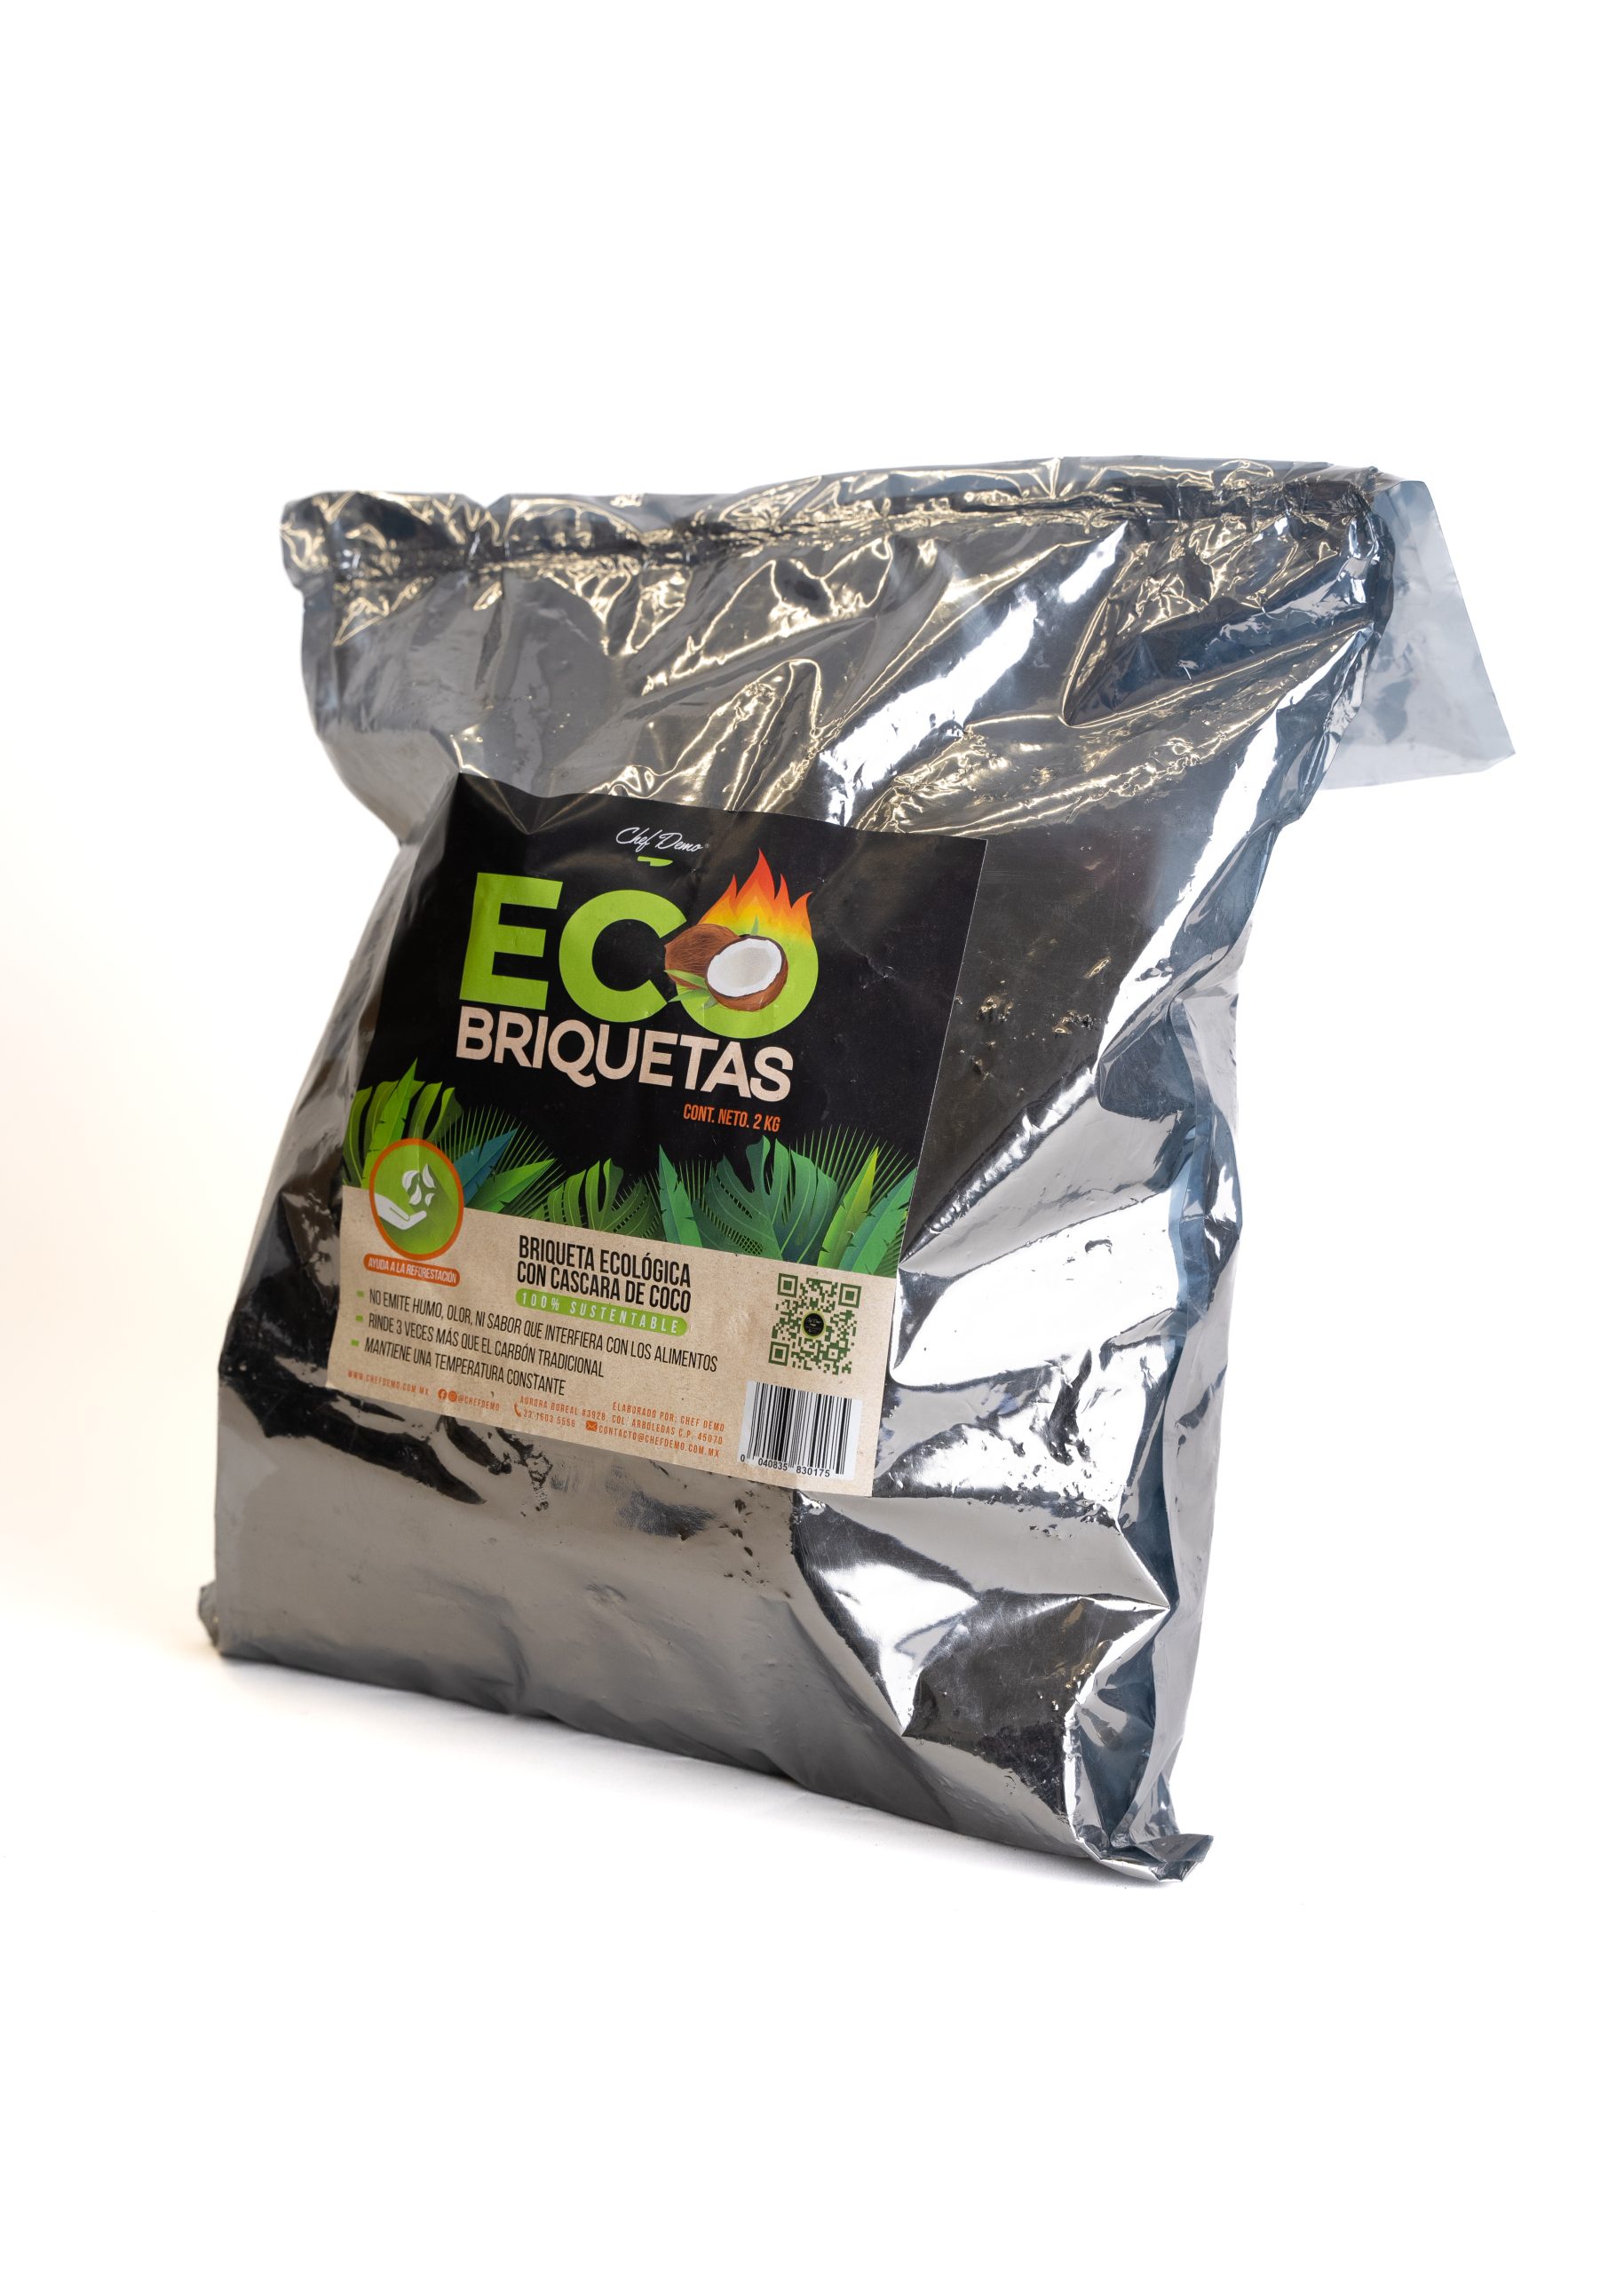 PELLETS DE SARMIENTO – Ecobrasa-Carbón de coco para barbacoas